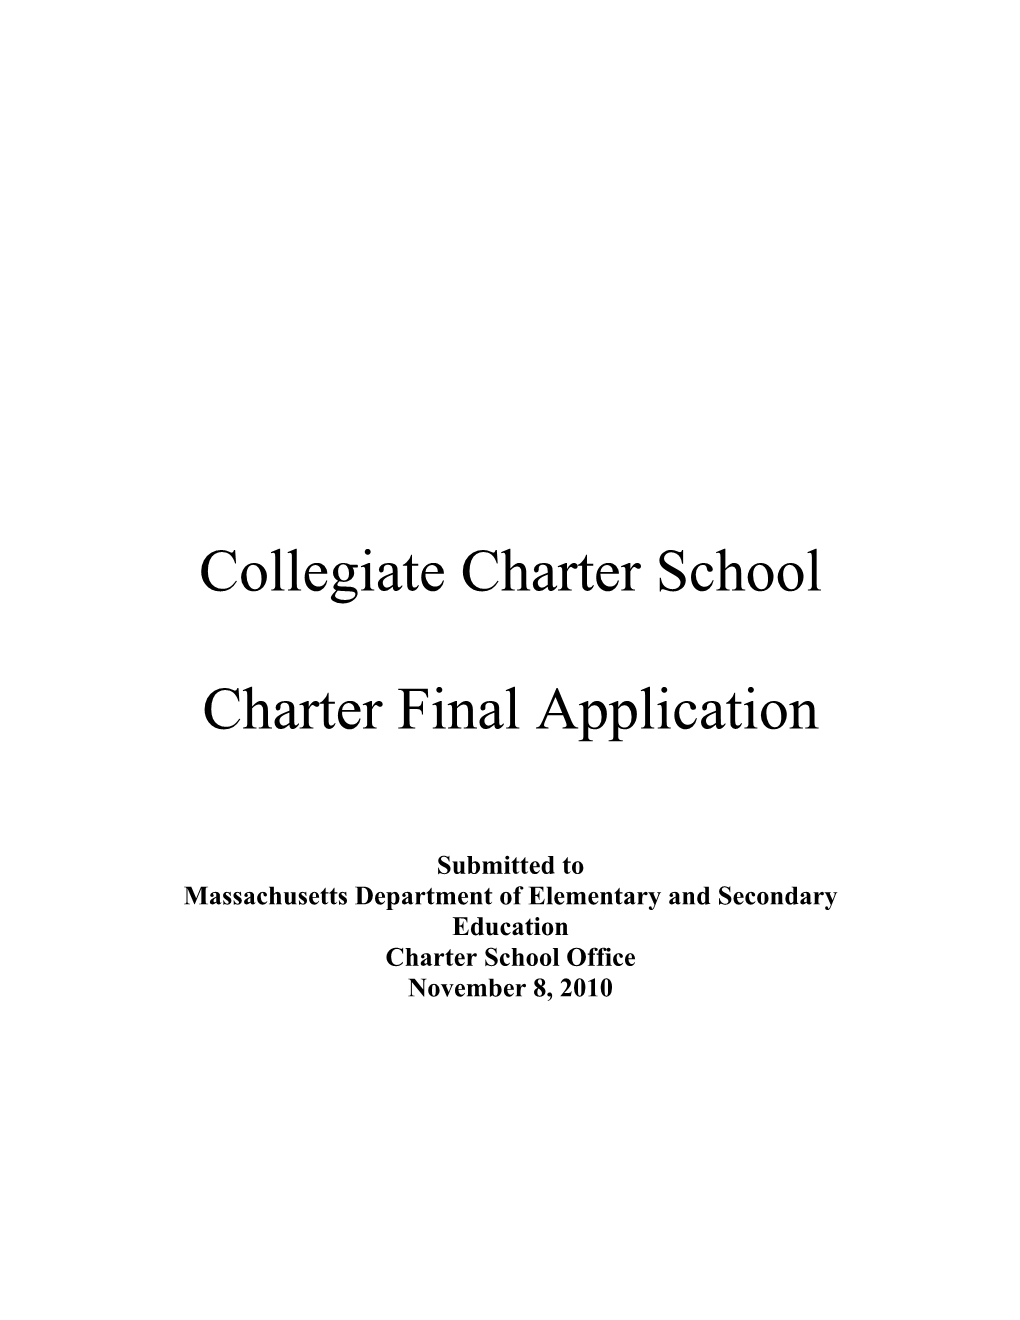 Collegiate Charter School Charter Final Application